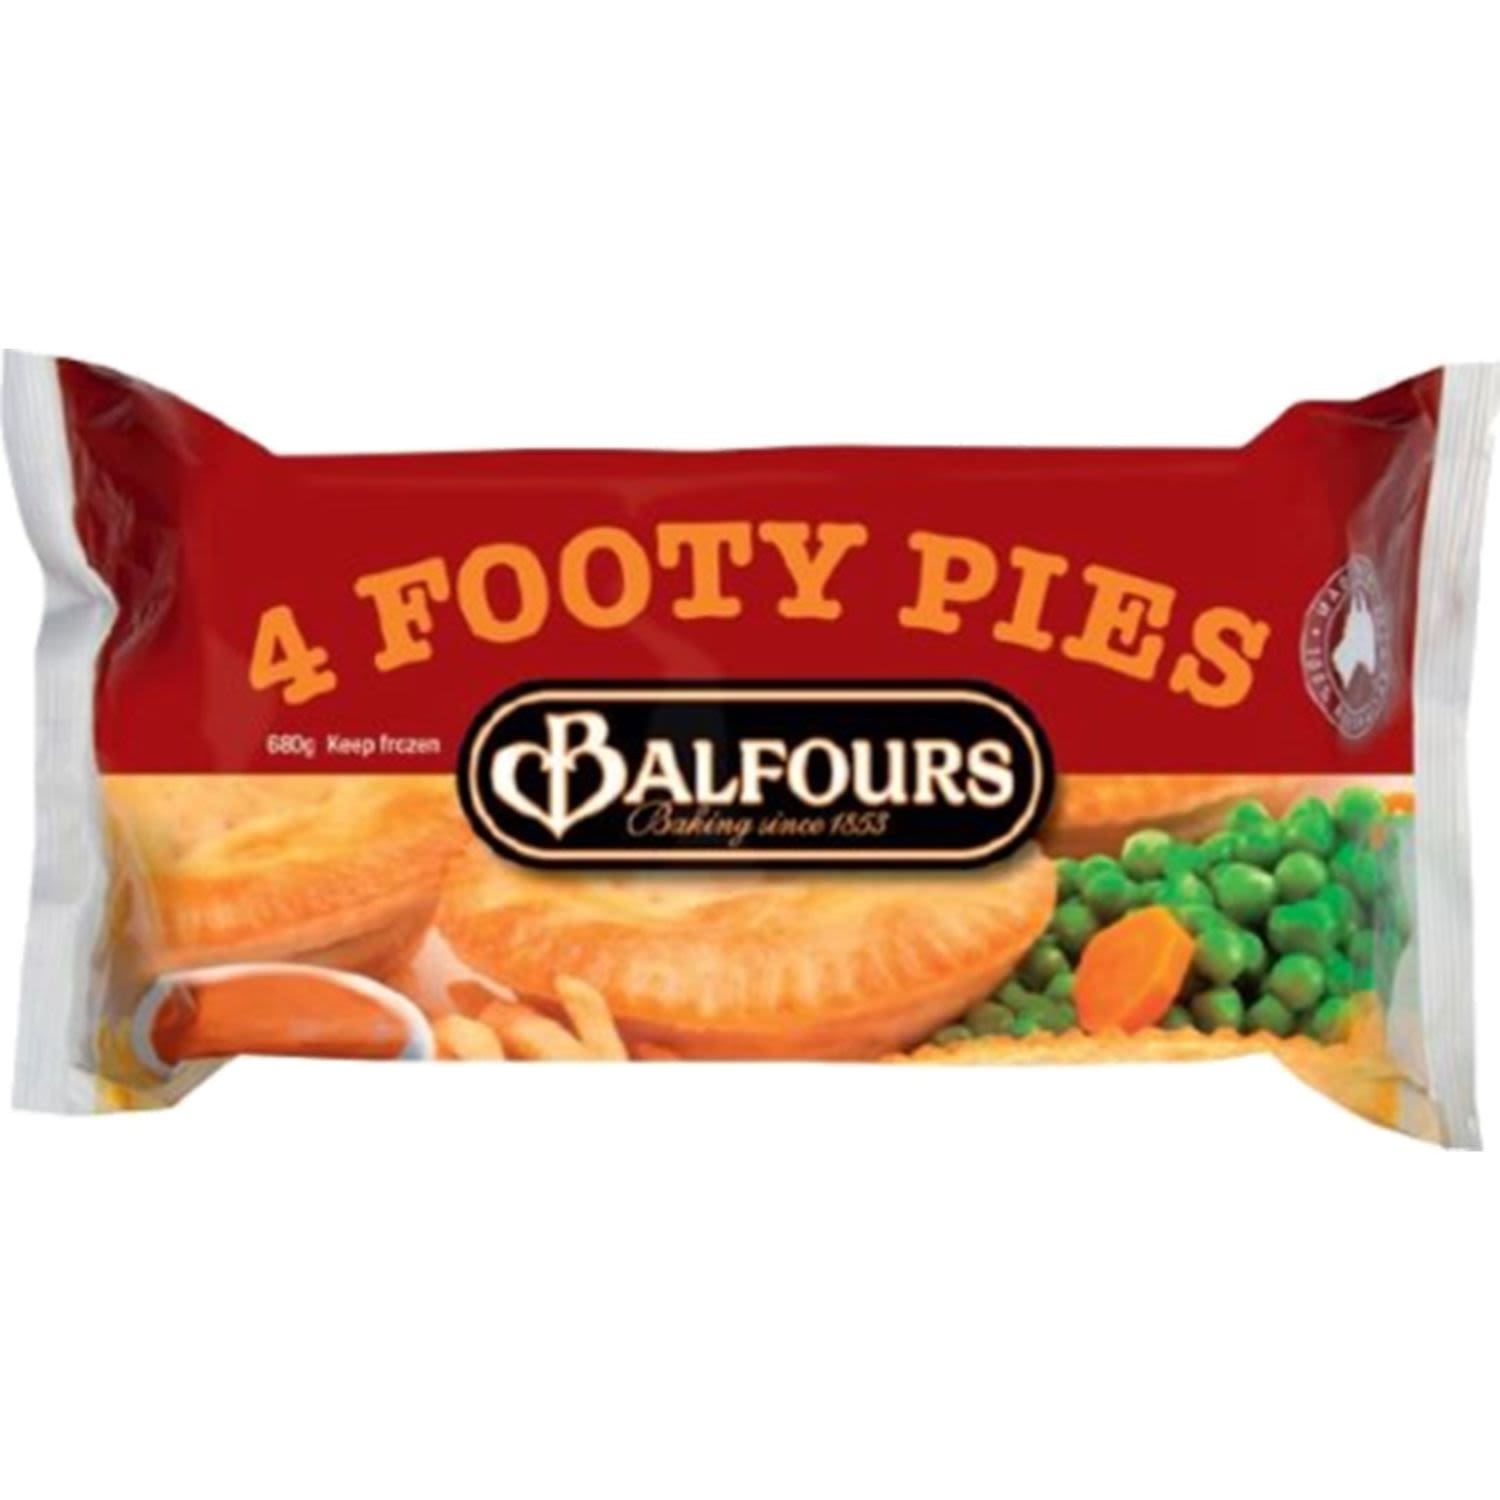 Balfours Pie Footy, 4 Each